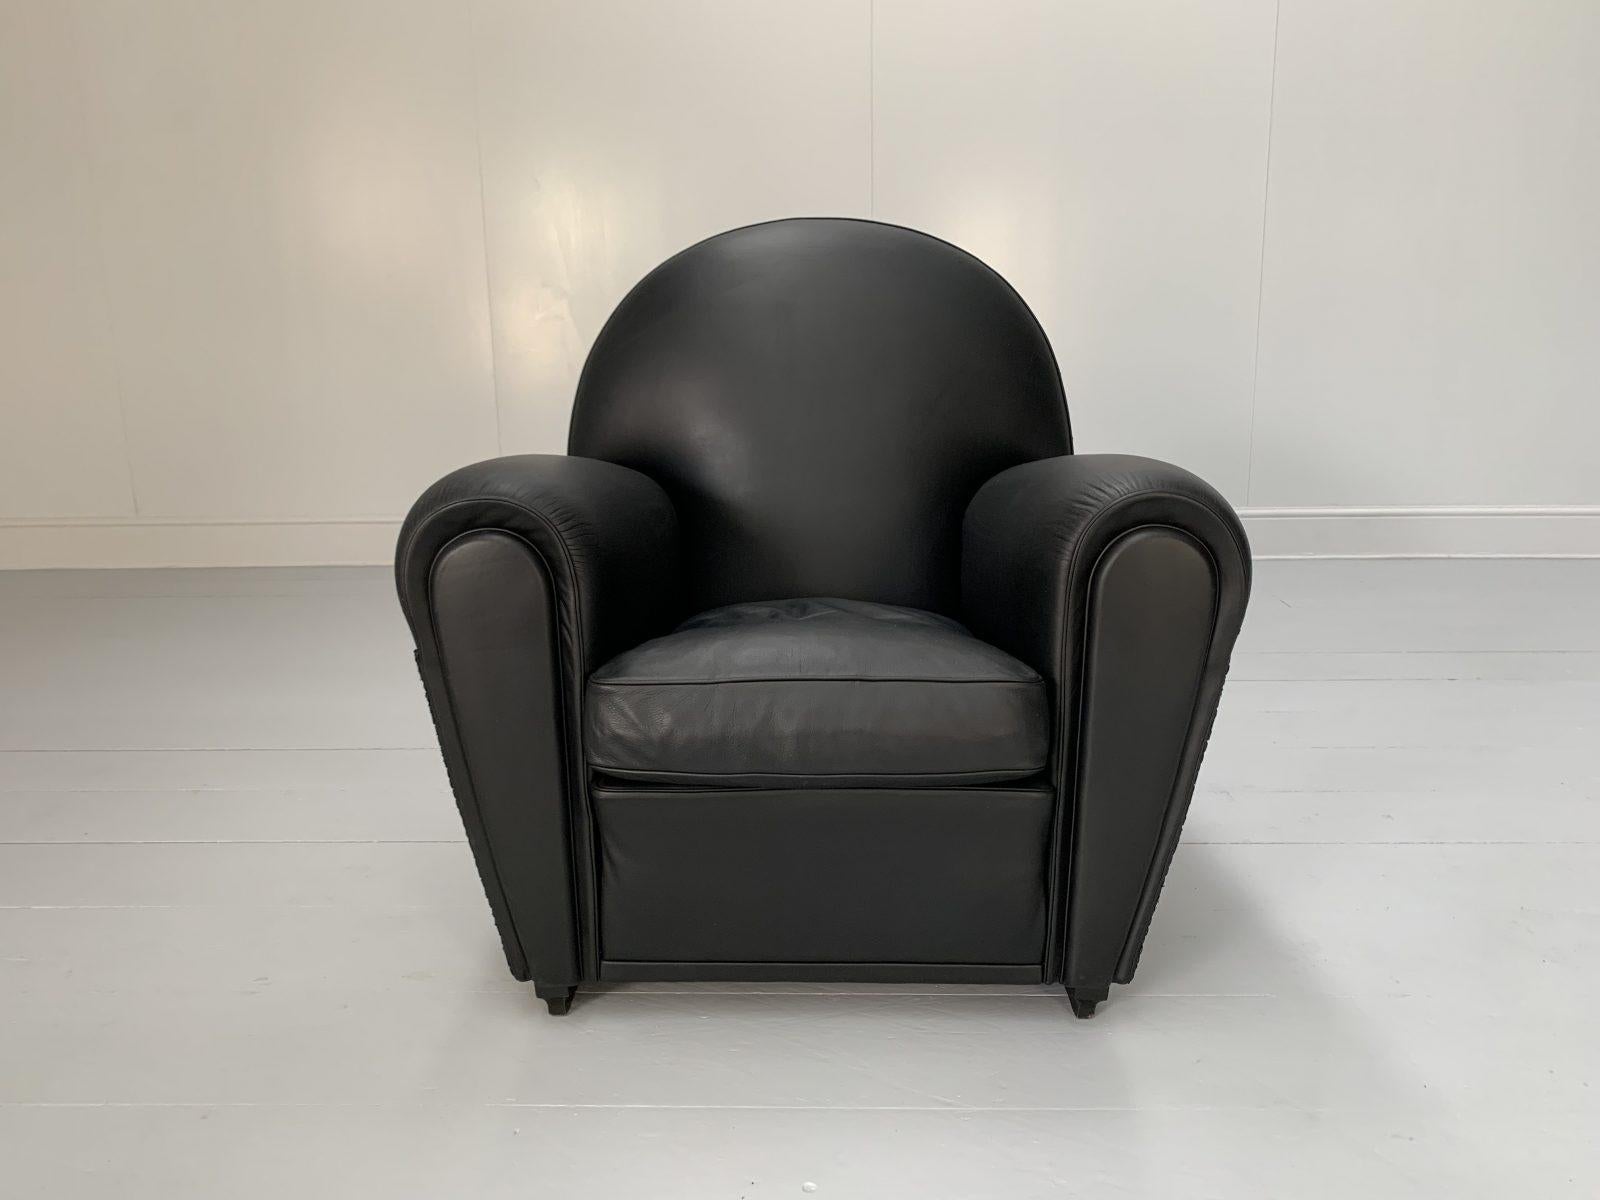 Pair of Poltrona Frau “Vanity Fair” Armchairs – In “Pelle Frau” Black Leather For Sale 2